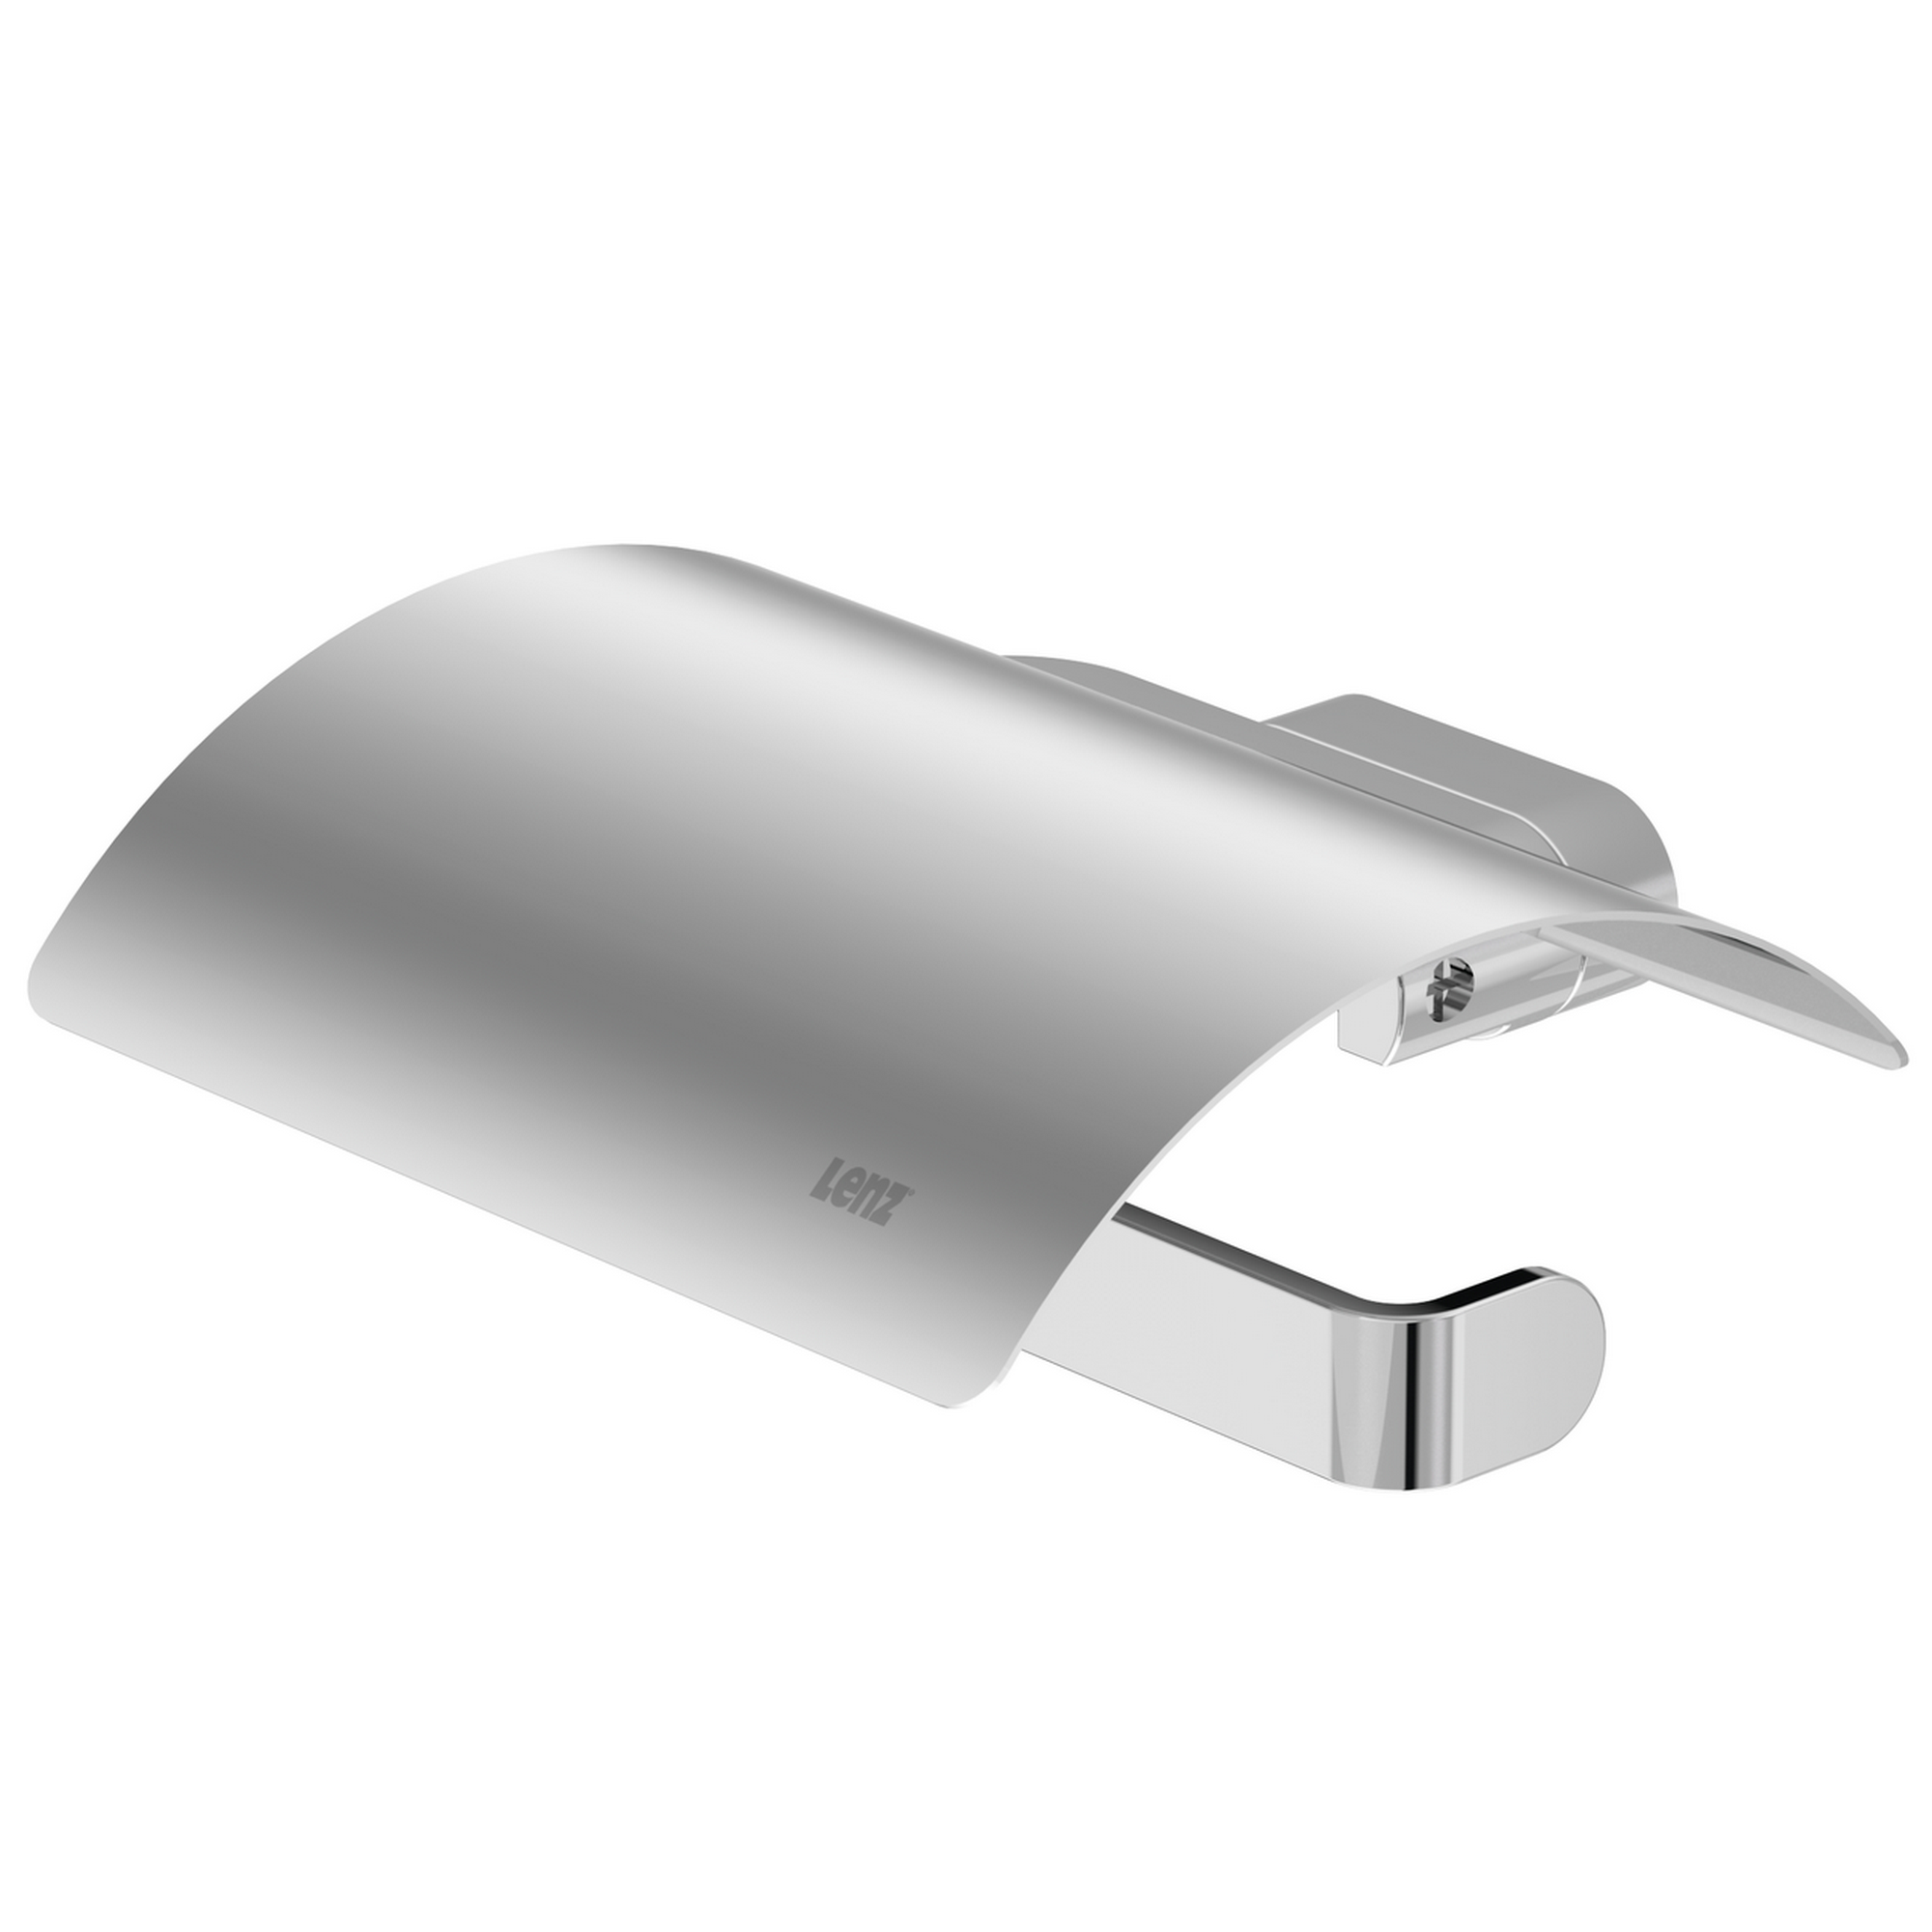 Toilettenpapierhalter mit Deckel 'Aura' wandhängend verchromt + product picture